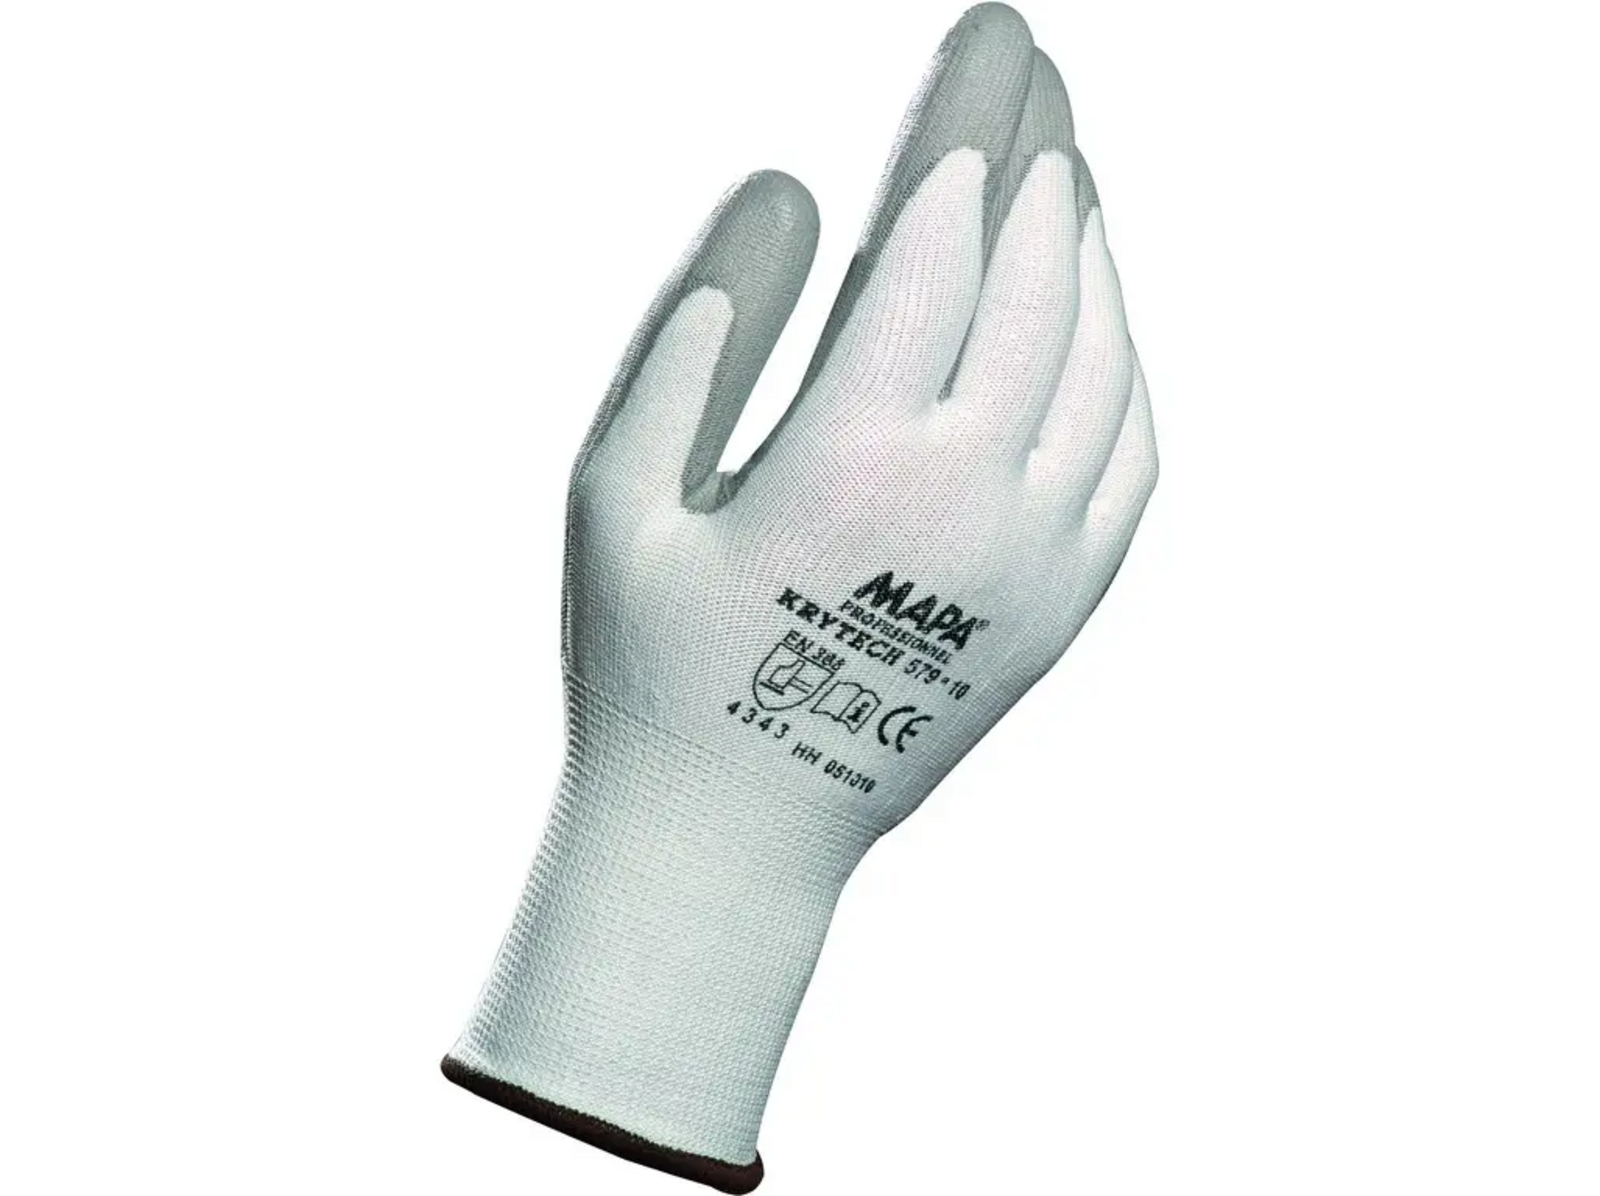 Protiporezové rukavice Mapa Krytech 579 - veľkosť: 7/S, farba: biela/sivá